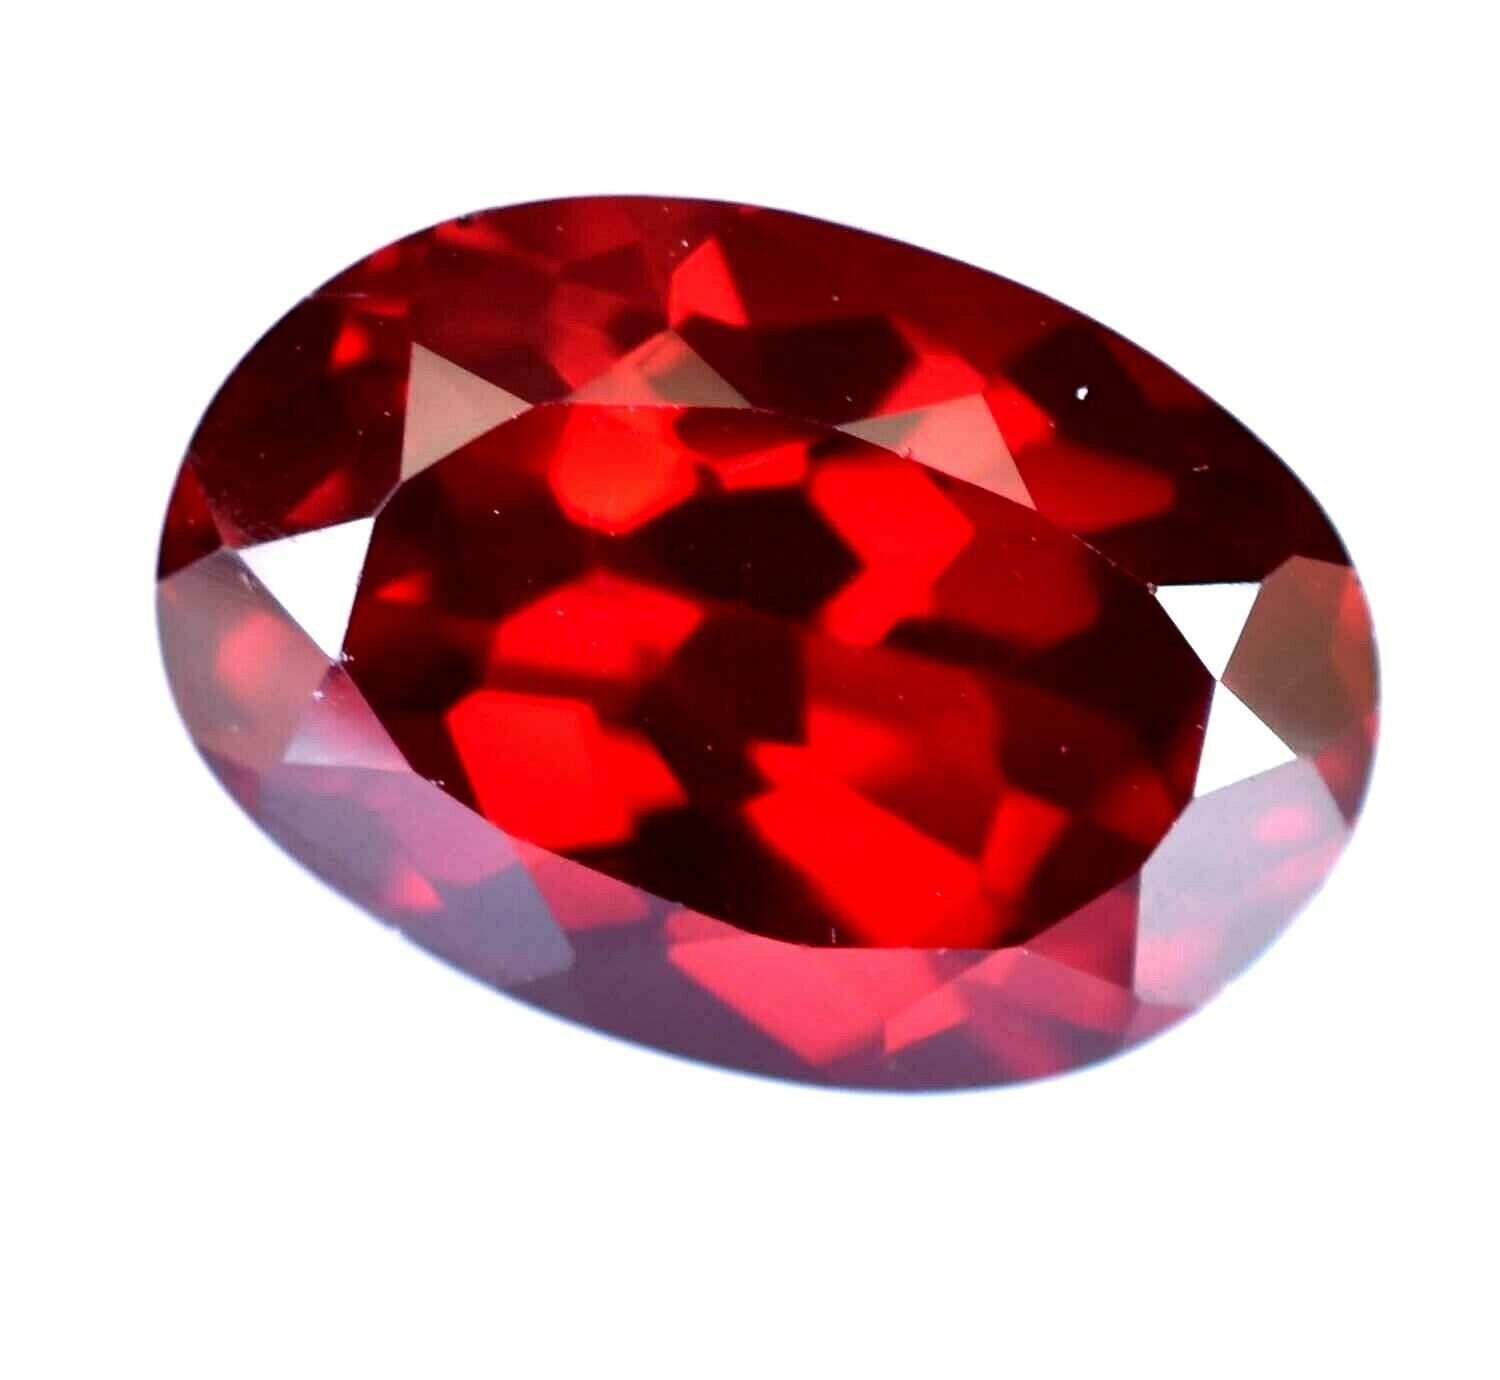 7.75 Ct Natural Red Color Almandine Garnet Oval Gemstone Agsl Certified